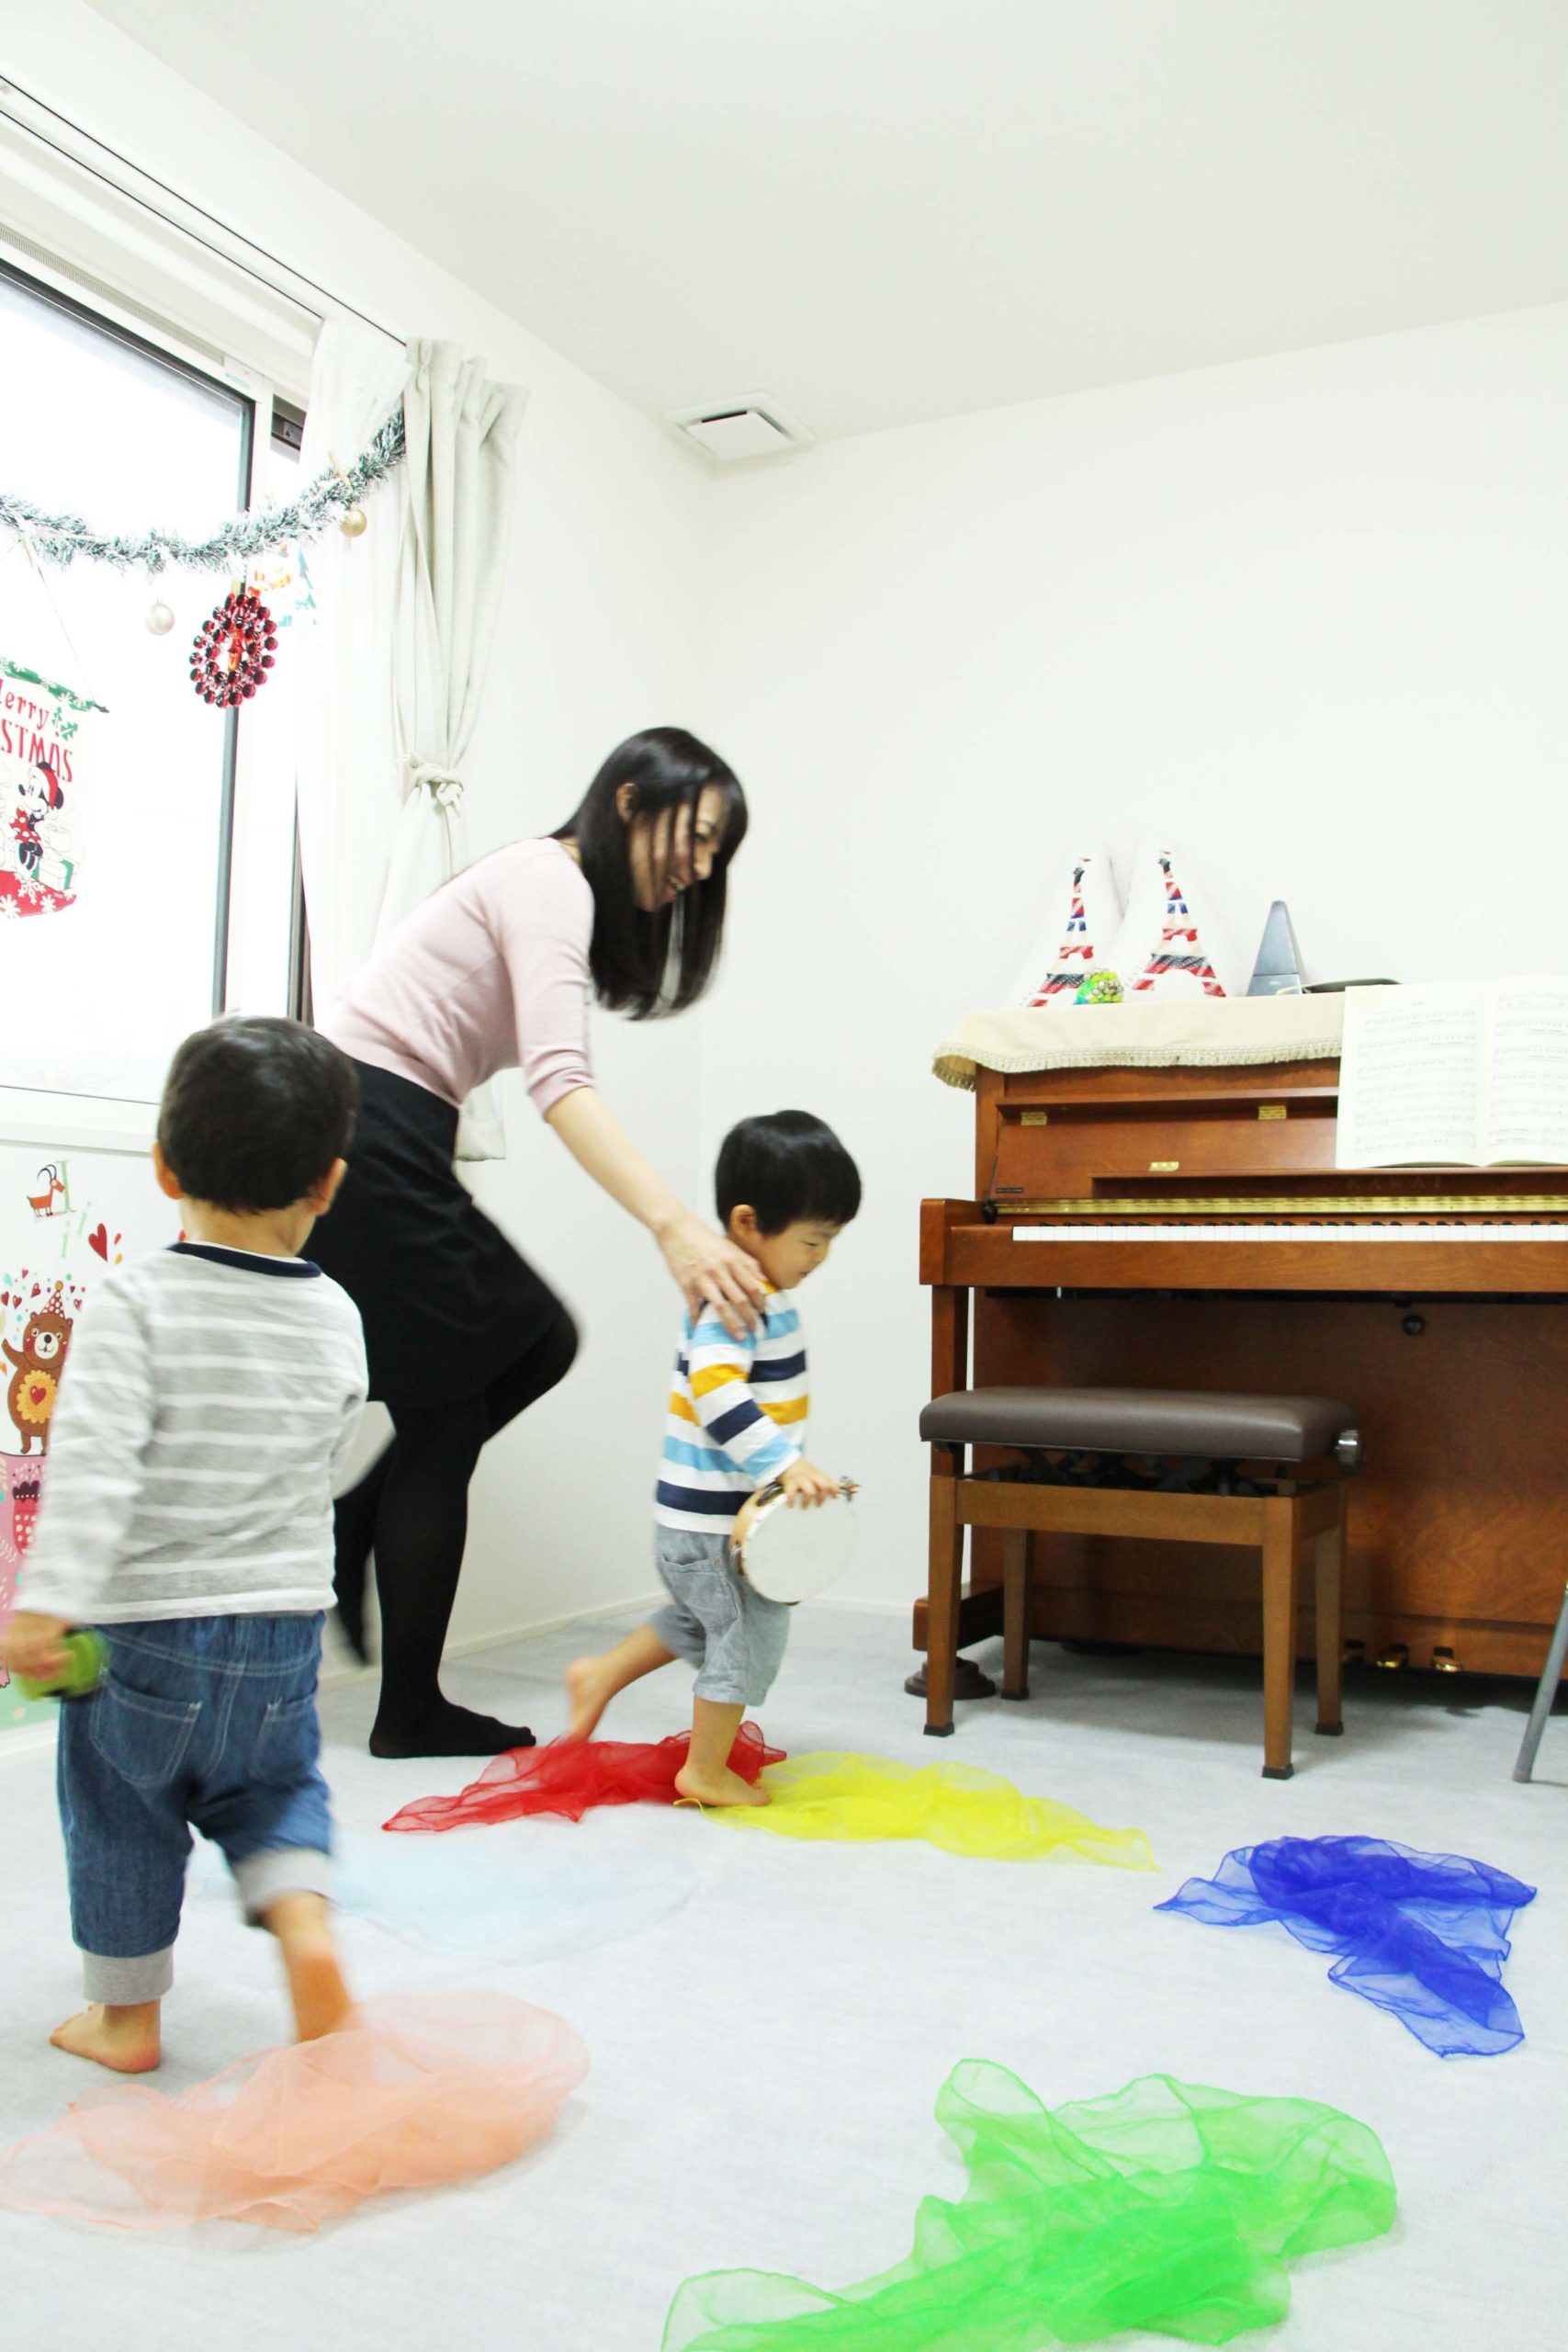 船橋市海神ピアノ教室での個人レッスンでオーダーメイドレッスンを４歳児に実施中の写真。西船橋ピアノ教室